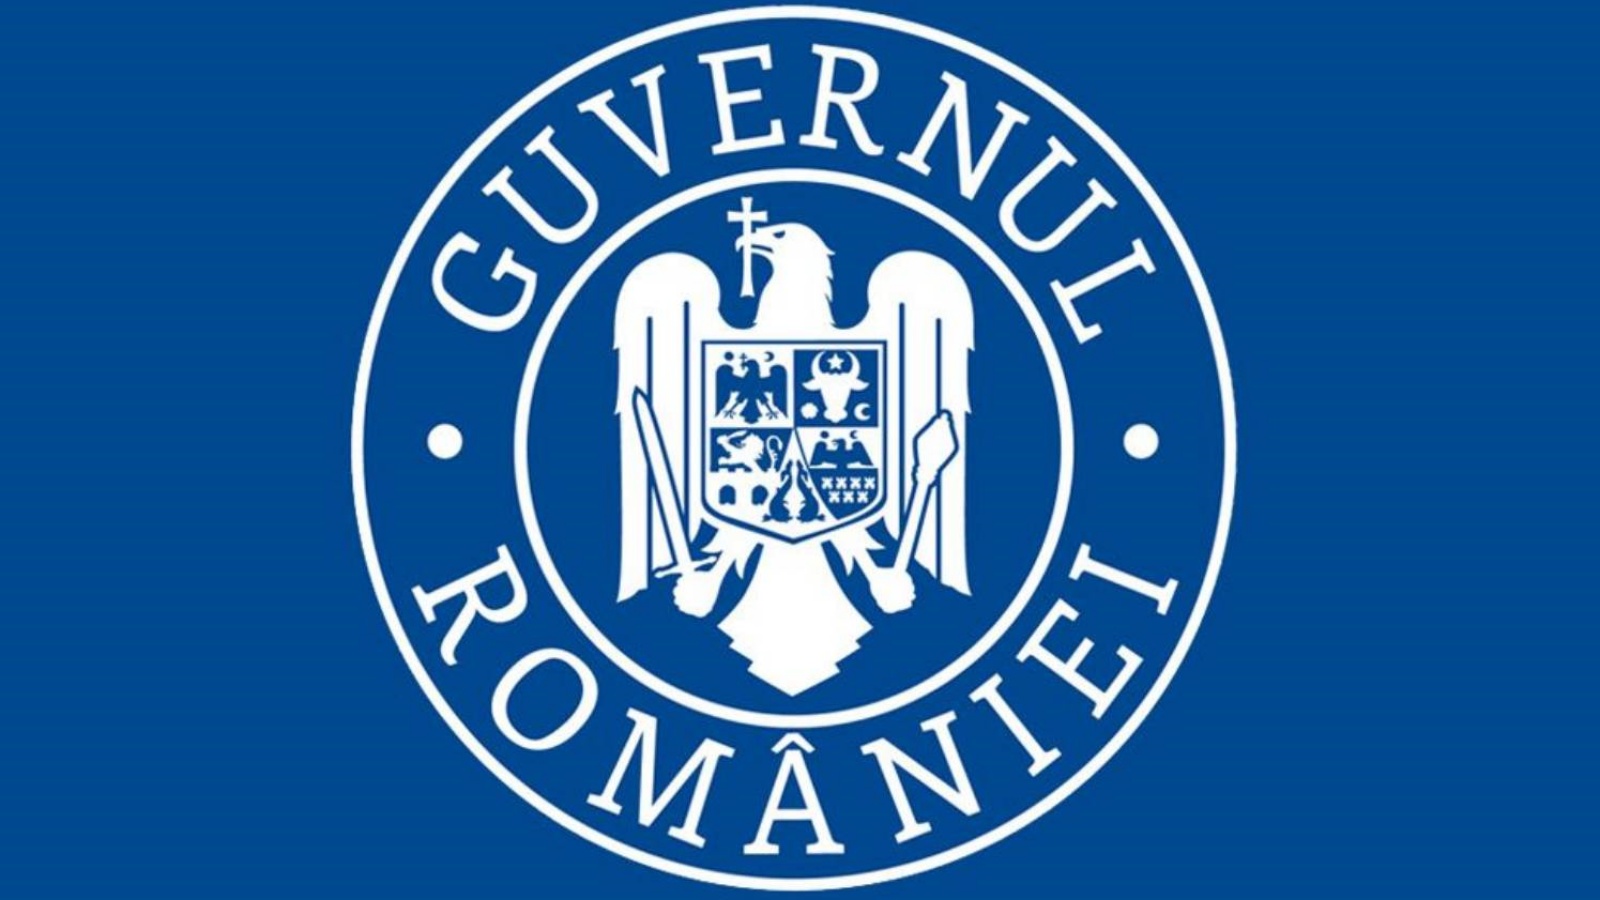 Guvernul Romaniei Anunta Noi Proiecte pentru Sistemul Energetic din Romania